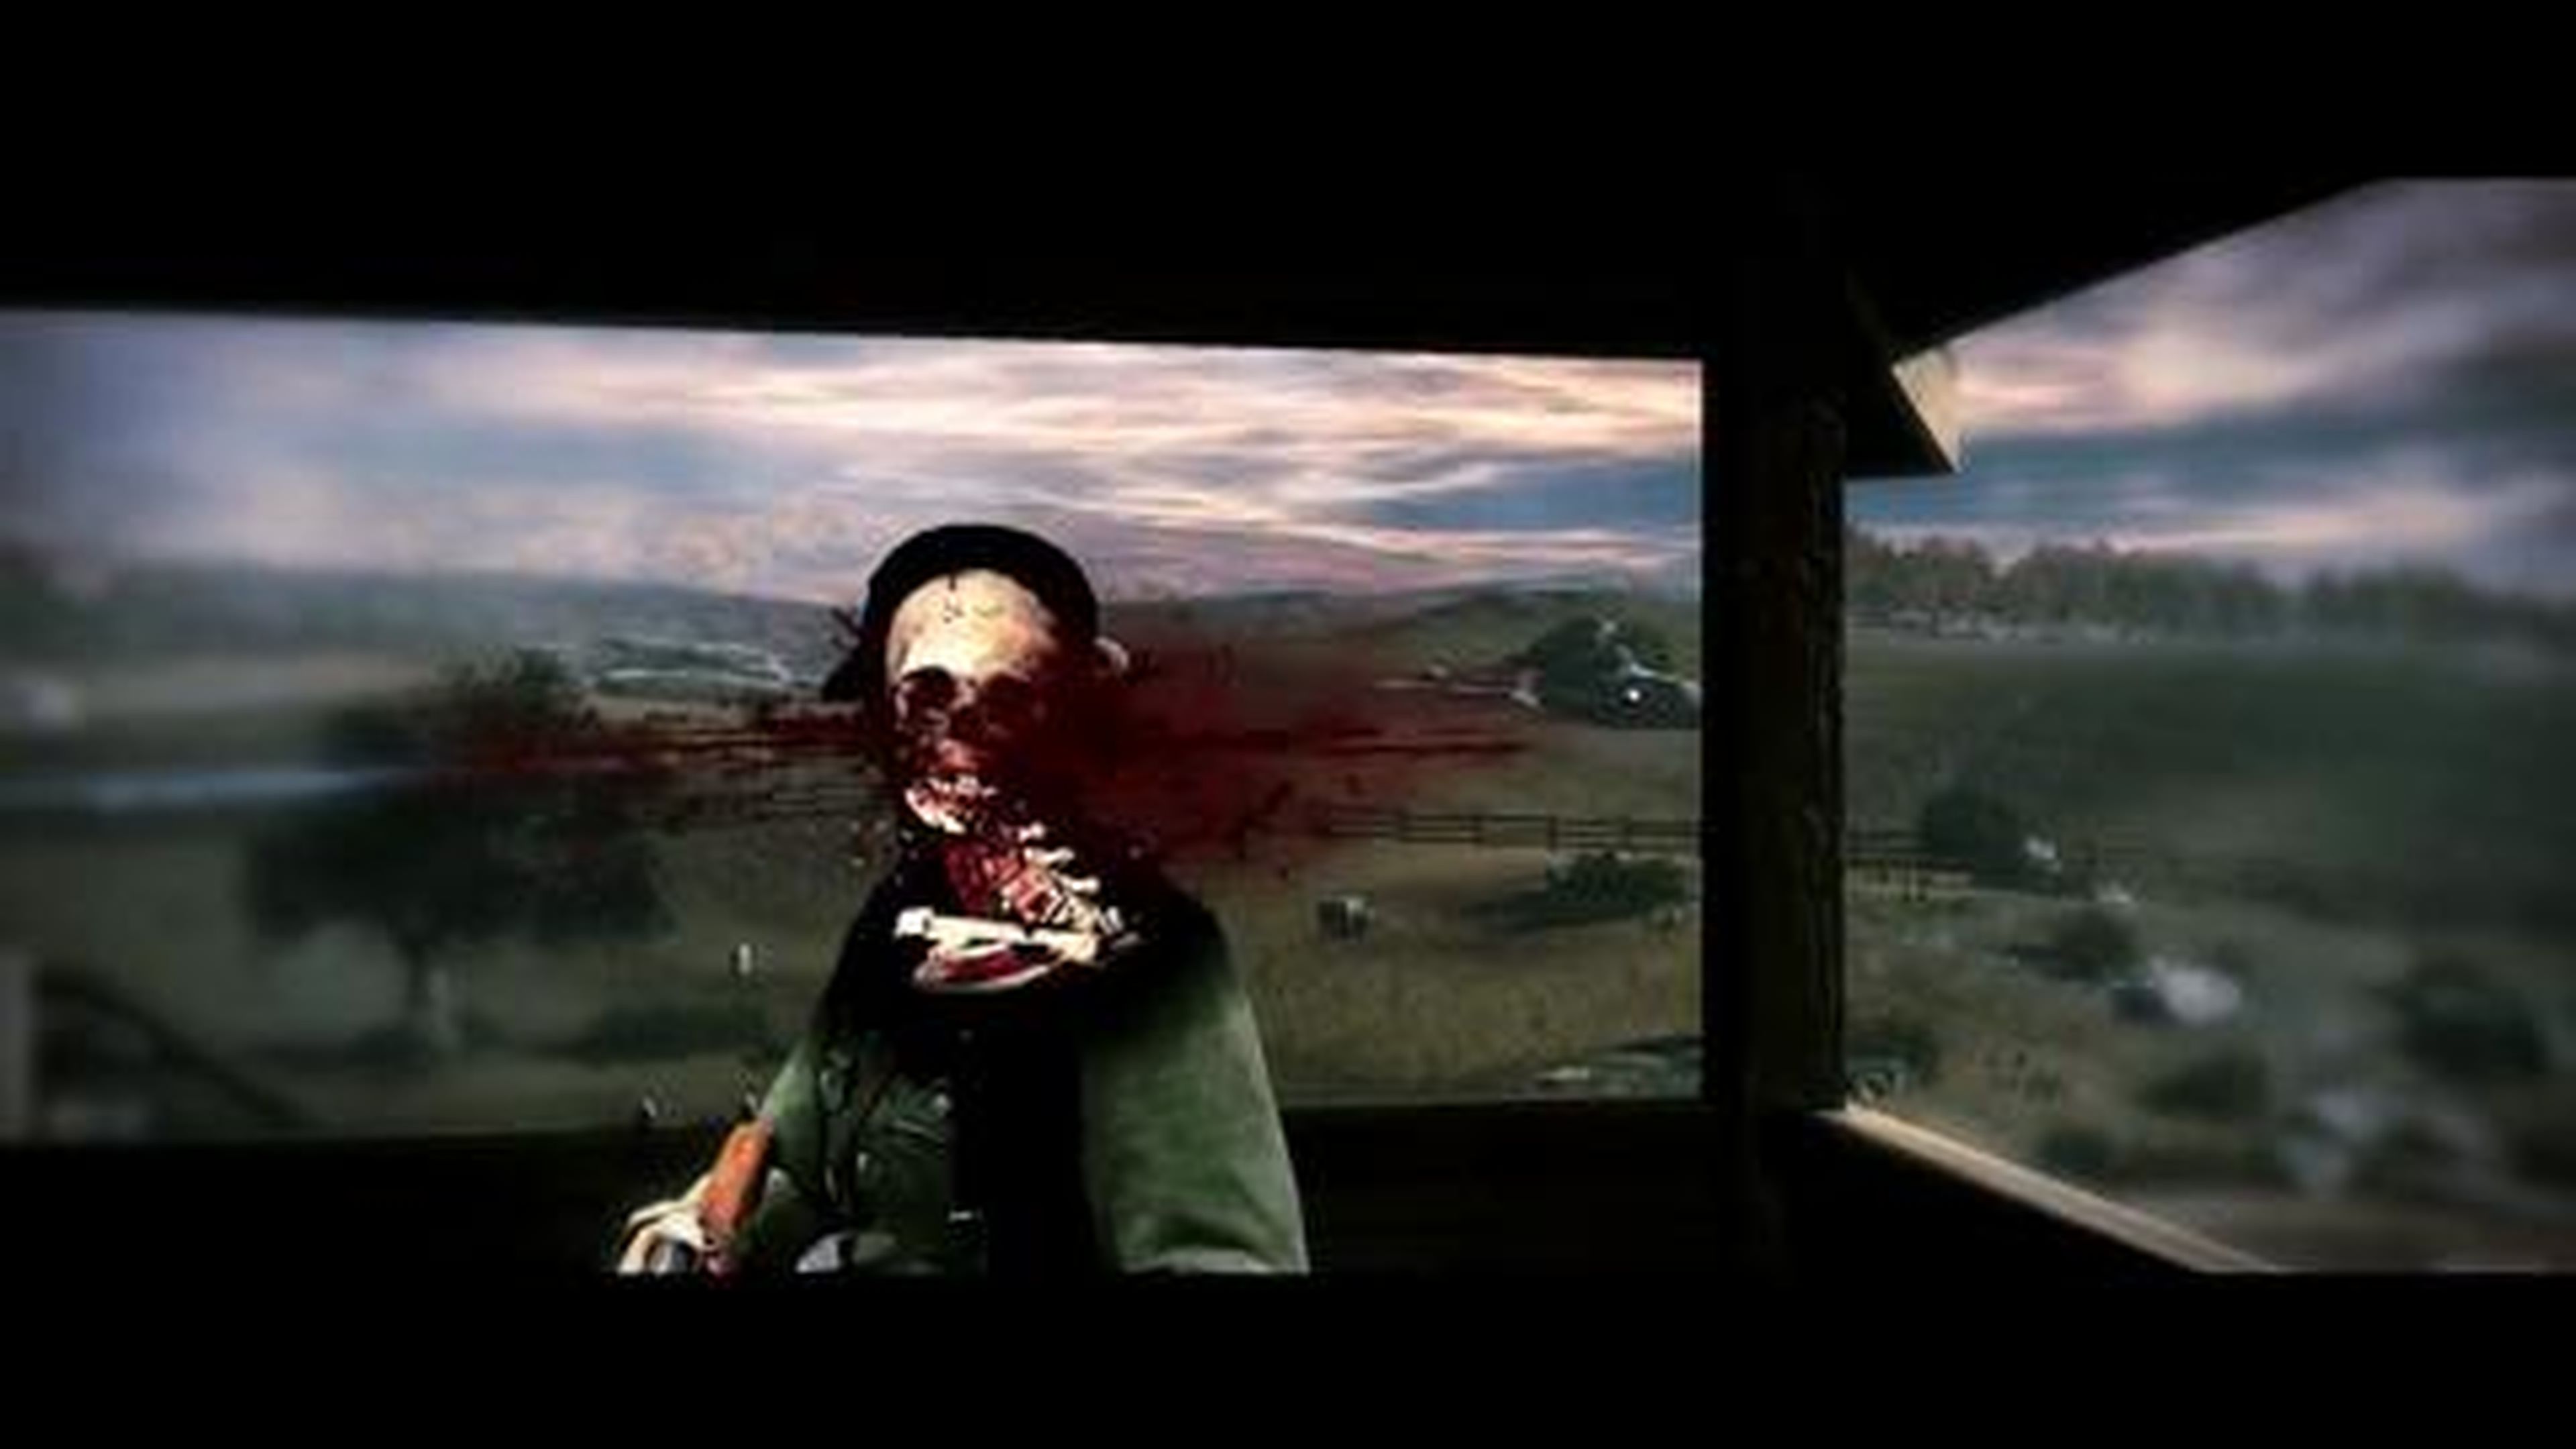 Tráiler de Sniper Elite V2 Edición GOTY en HobbyConsolas.com